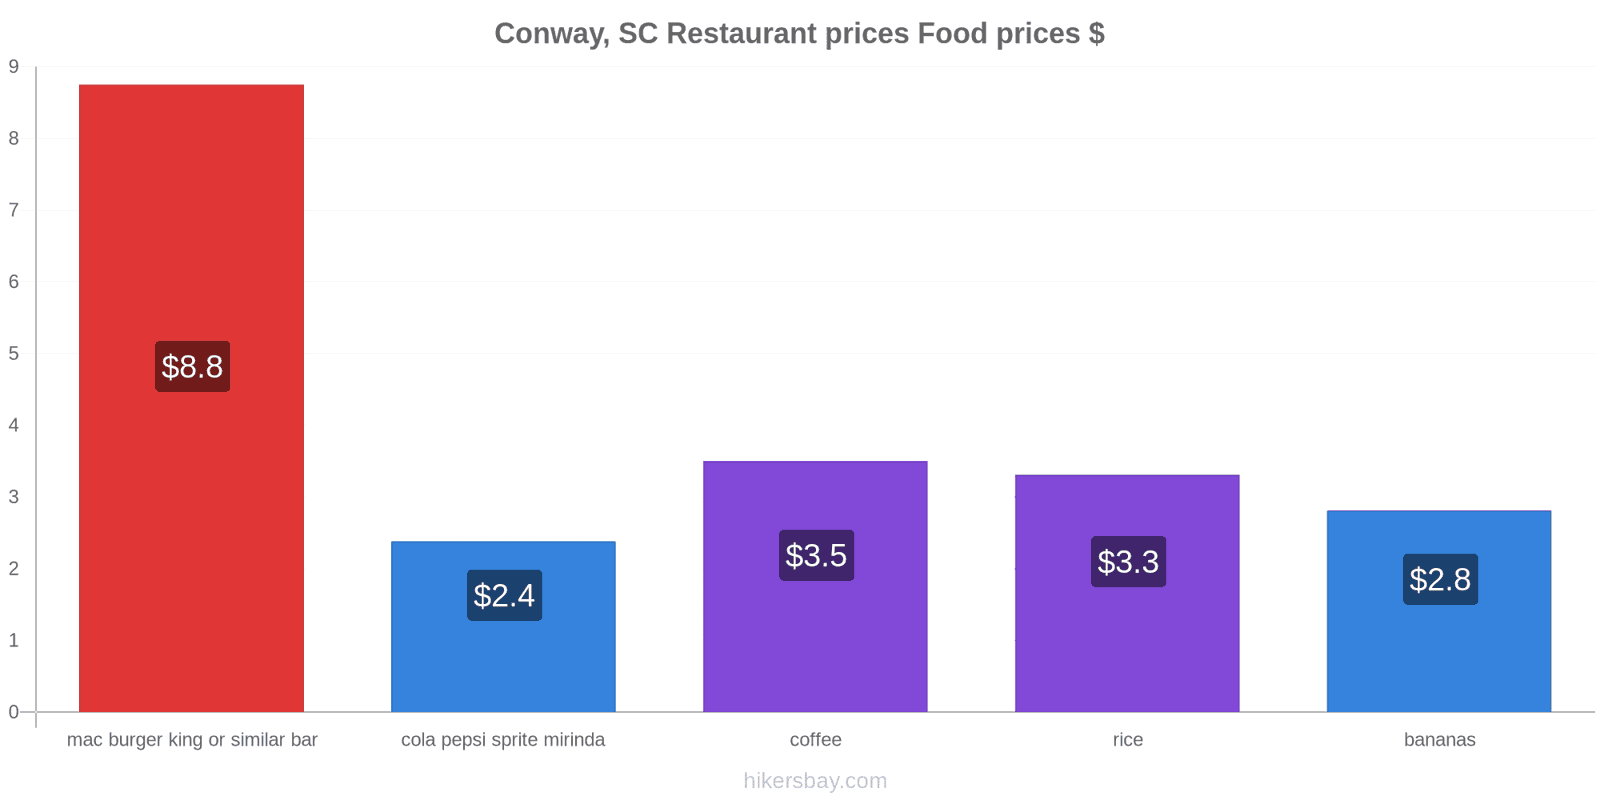 Conway, SC price changes hikersbay.com